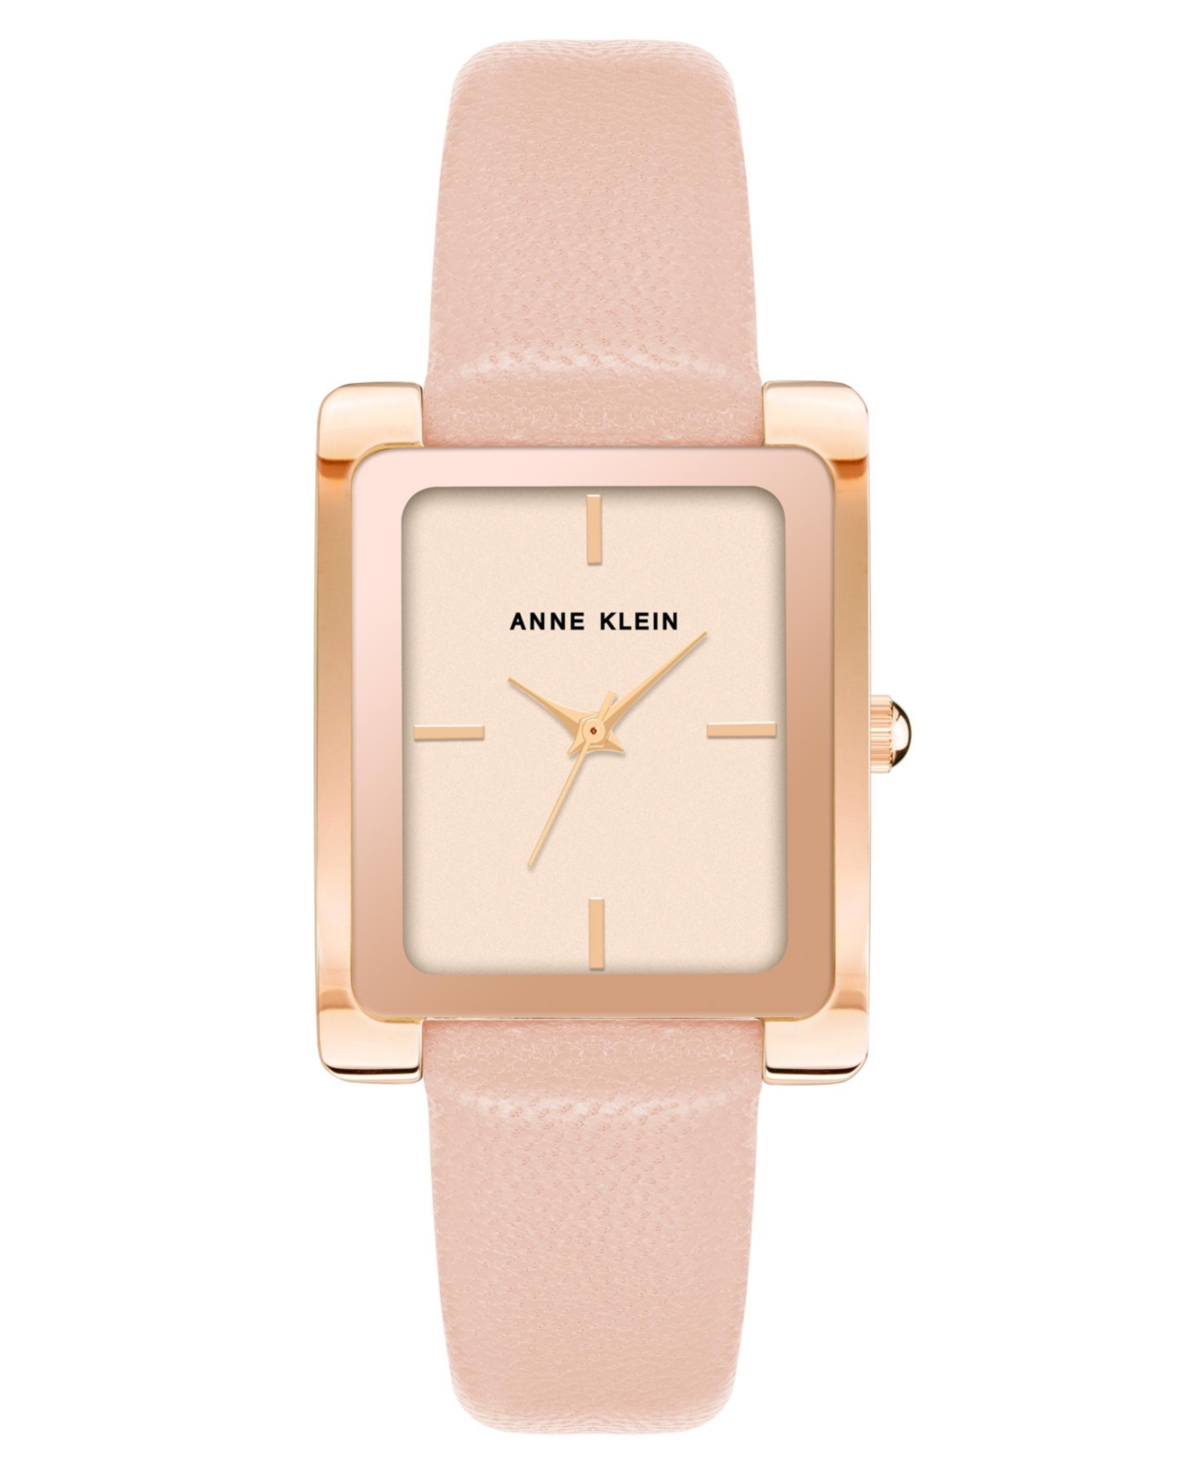 Anne Klein Women's Three-hand Quartz Blush Genuine Leather Strap Watch, 32mm In Rose Gold-tone,blush Pink